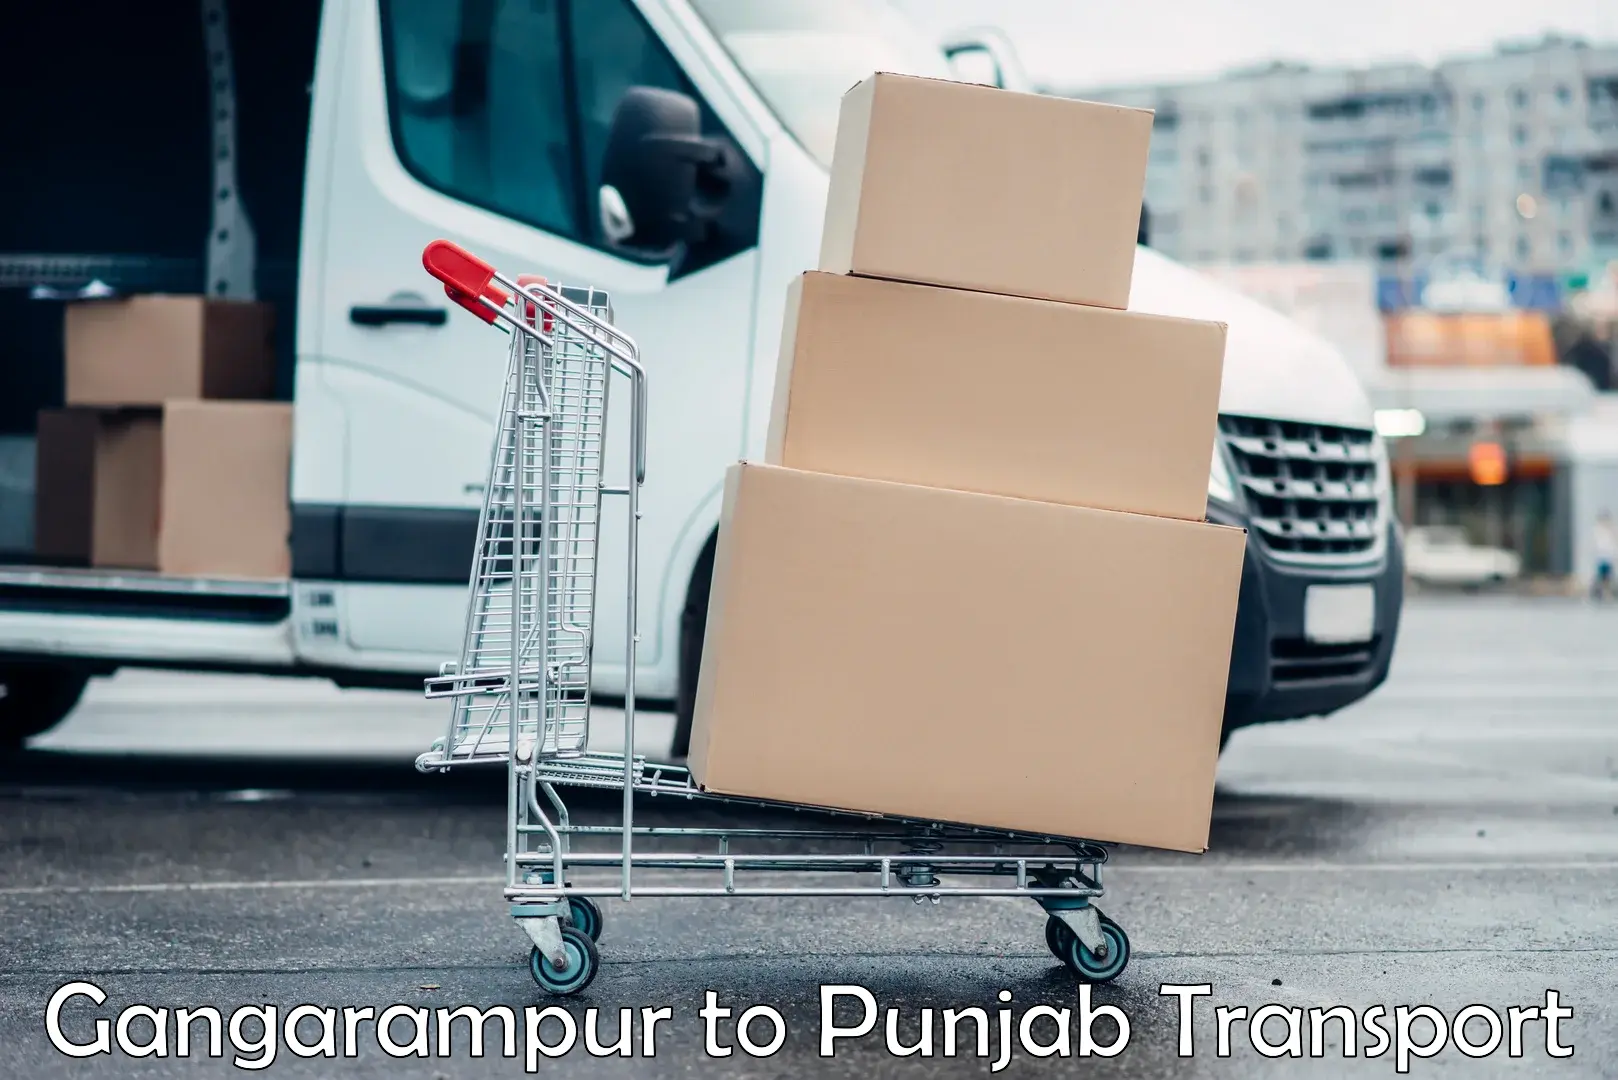 Furniture transport service Gangarampur to Punjab